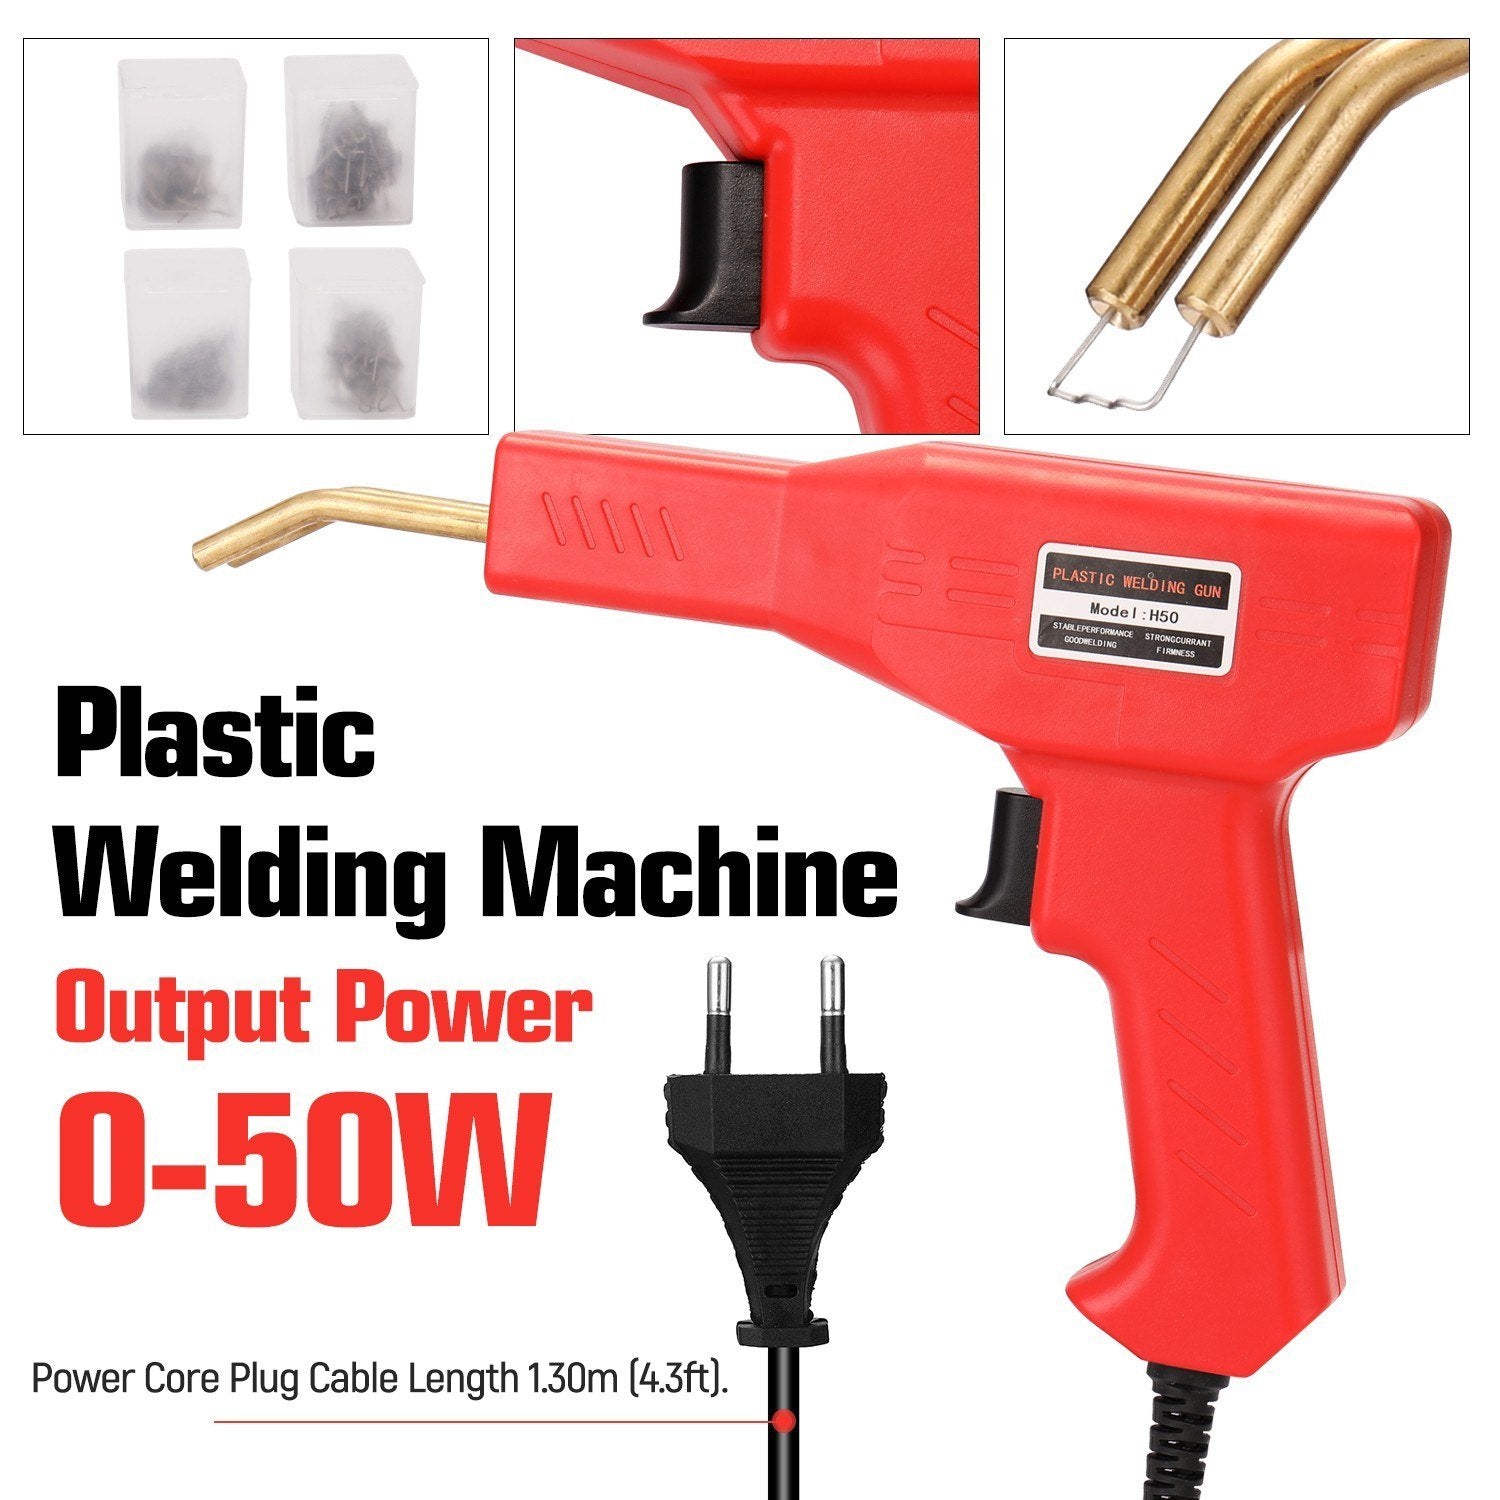 Handy Plastics Welders Garage Tools Hot Staplers Machine Staple PVC Repairing